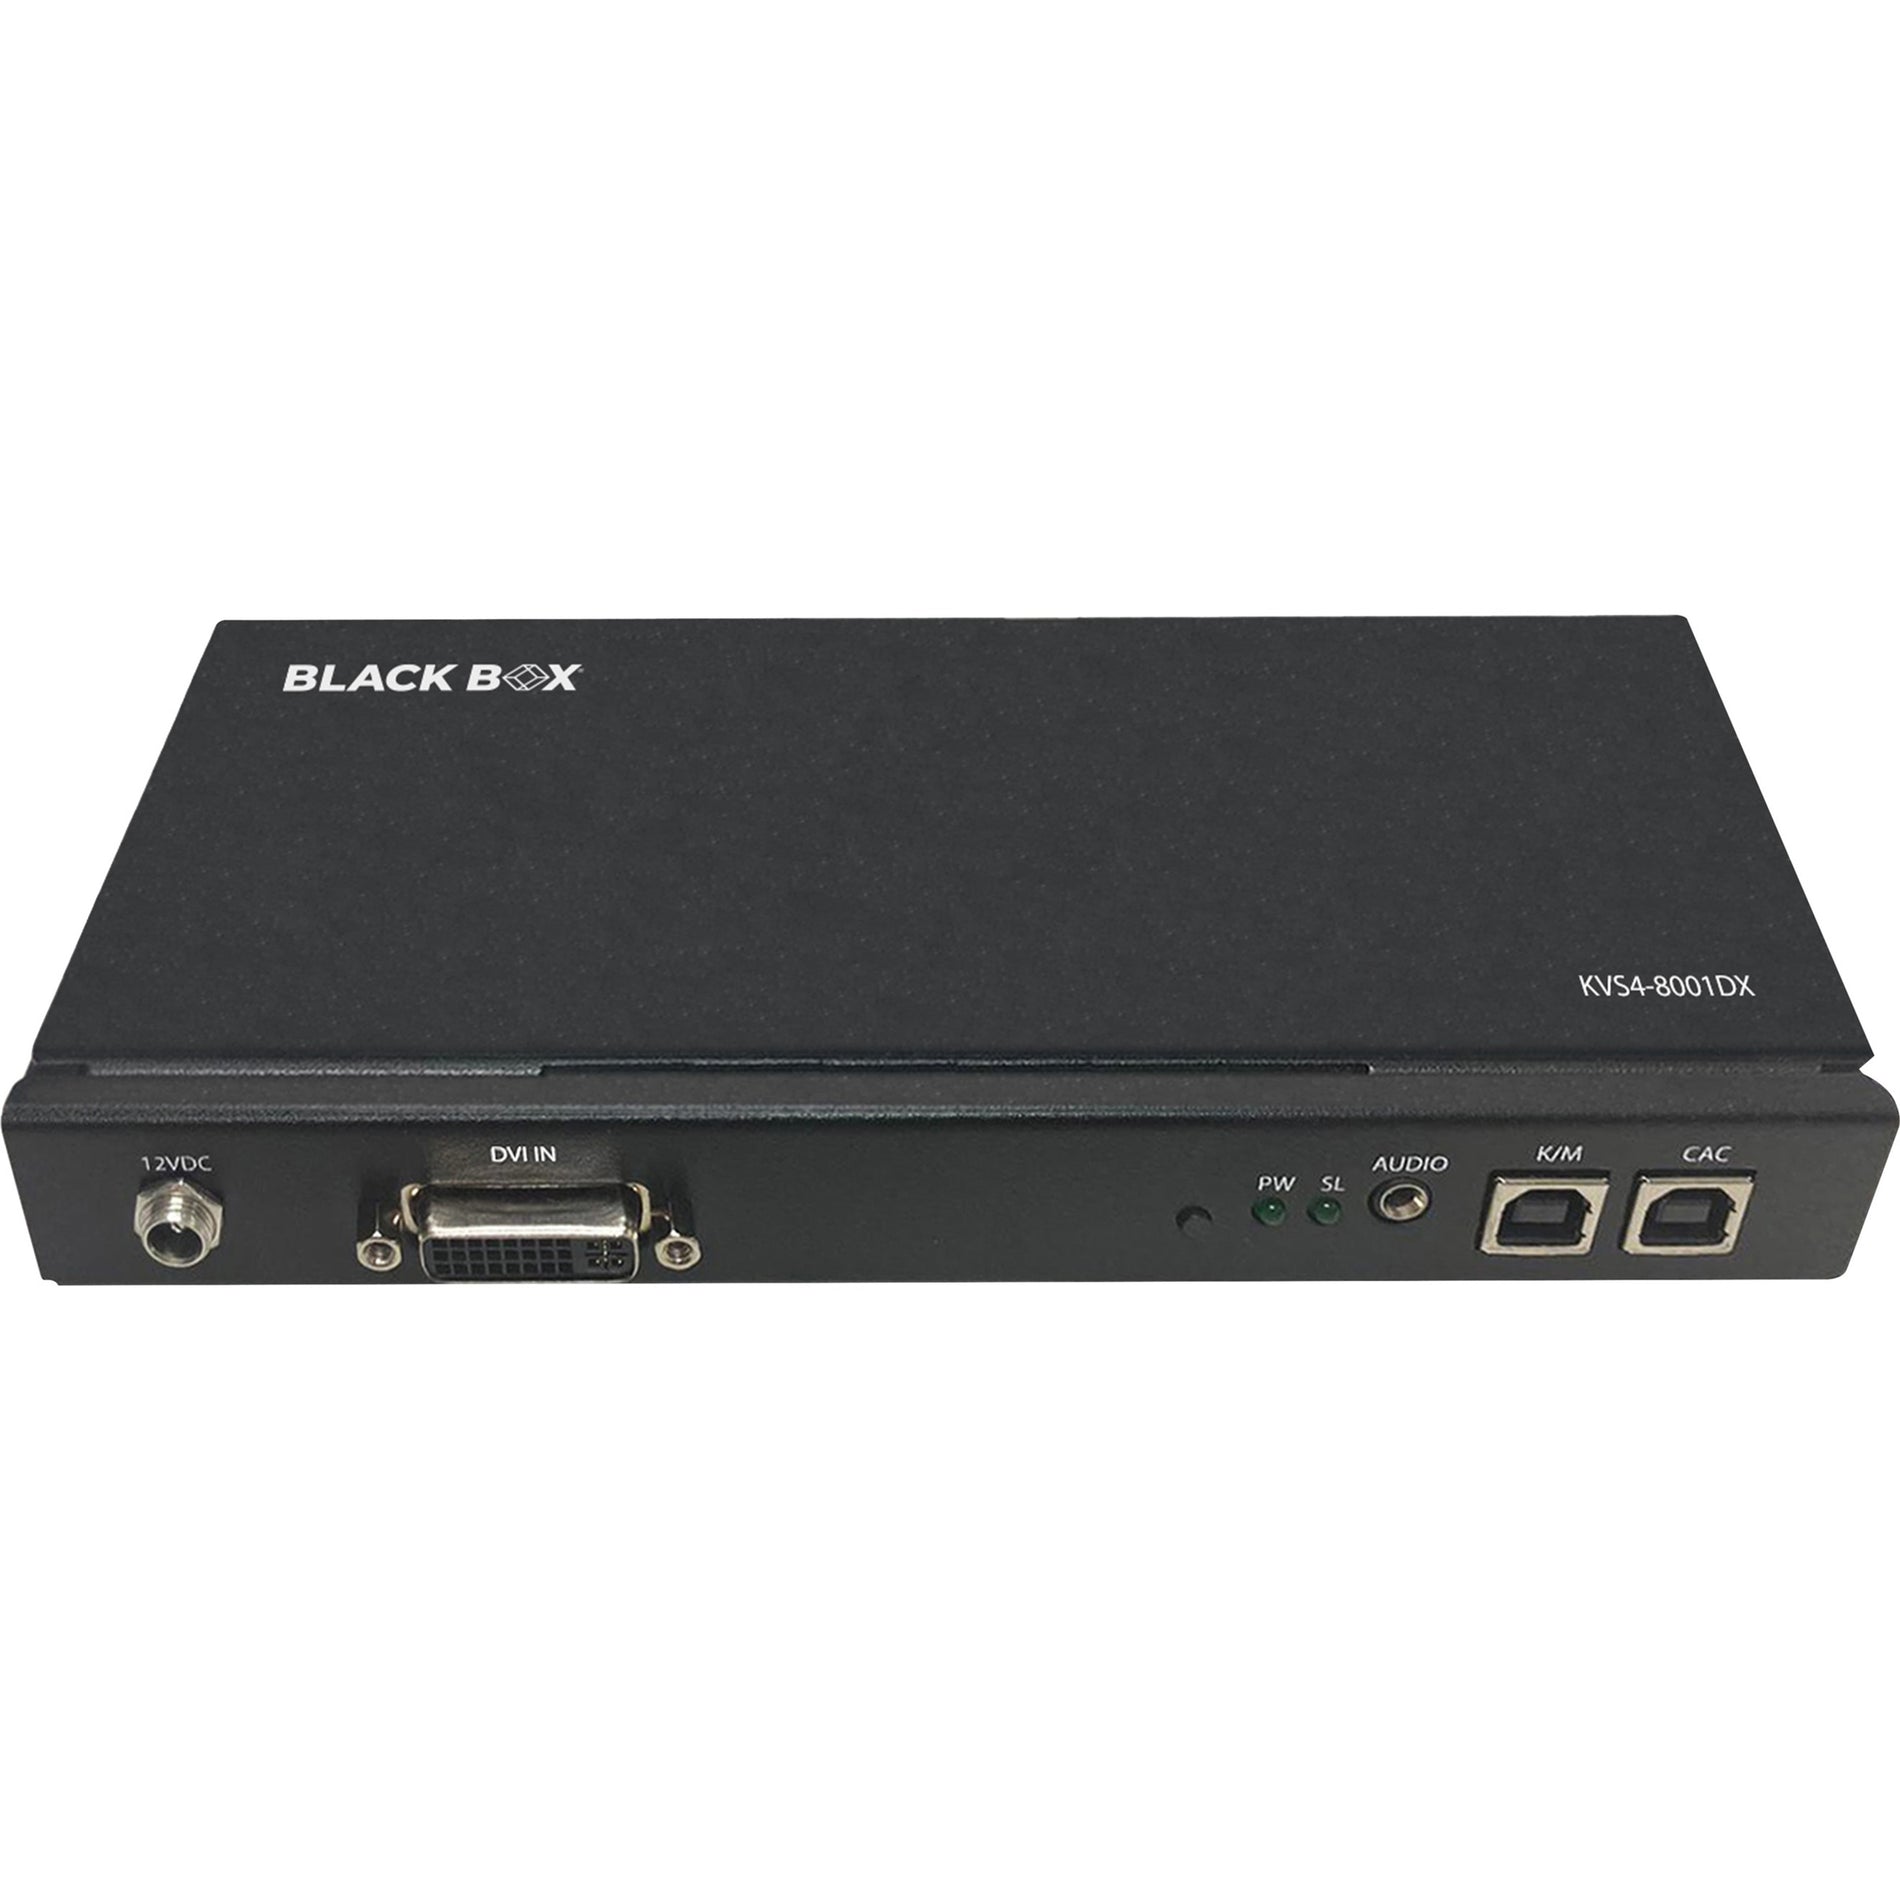 Black Box KVS4-8001DX Secure KVM Peripheral Defender - DVI-I, CAC, 2560 x 1600, 2 DVI Ports, 5 USB Ports